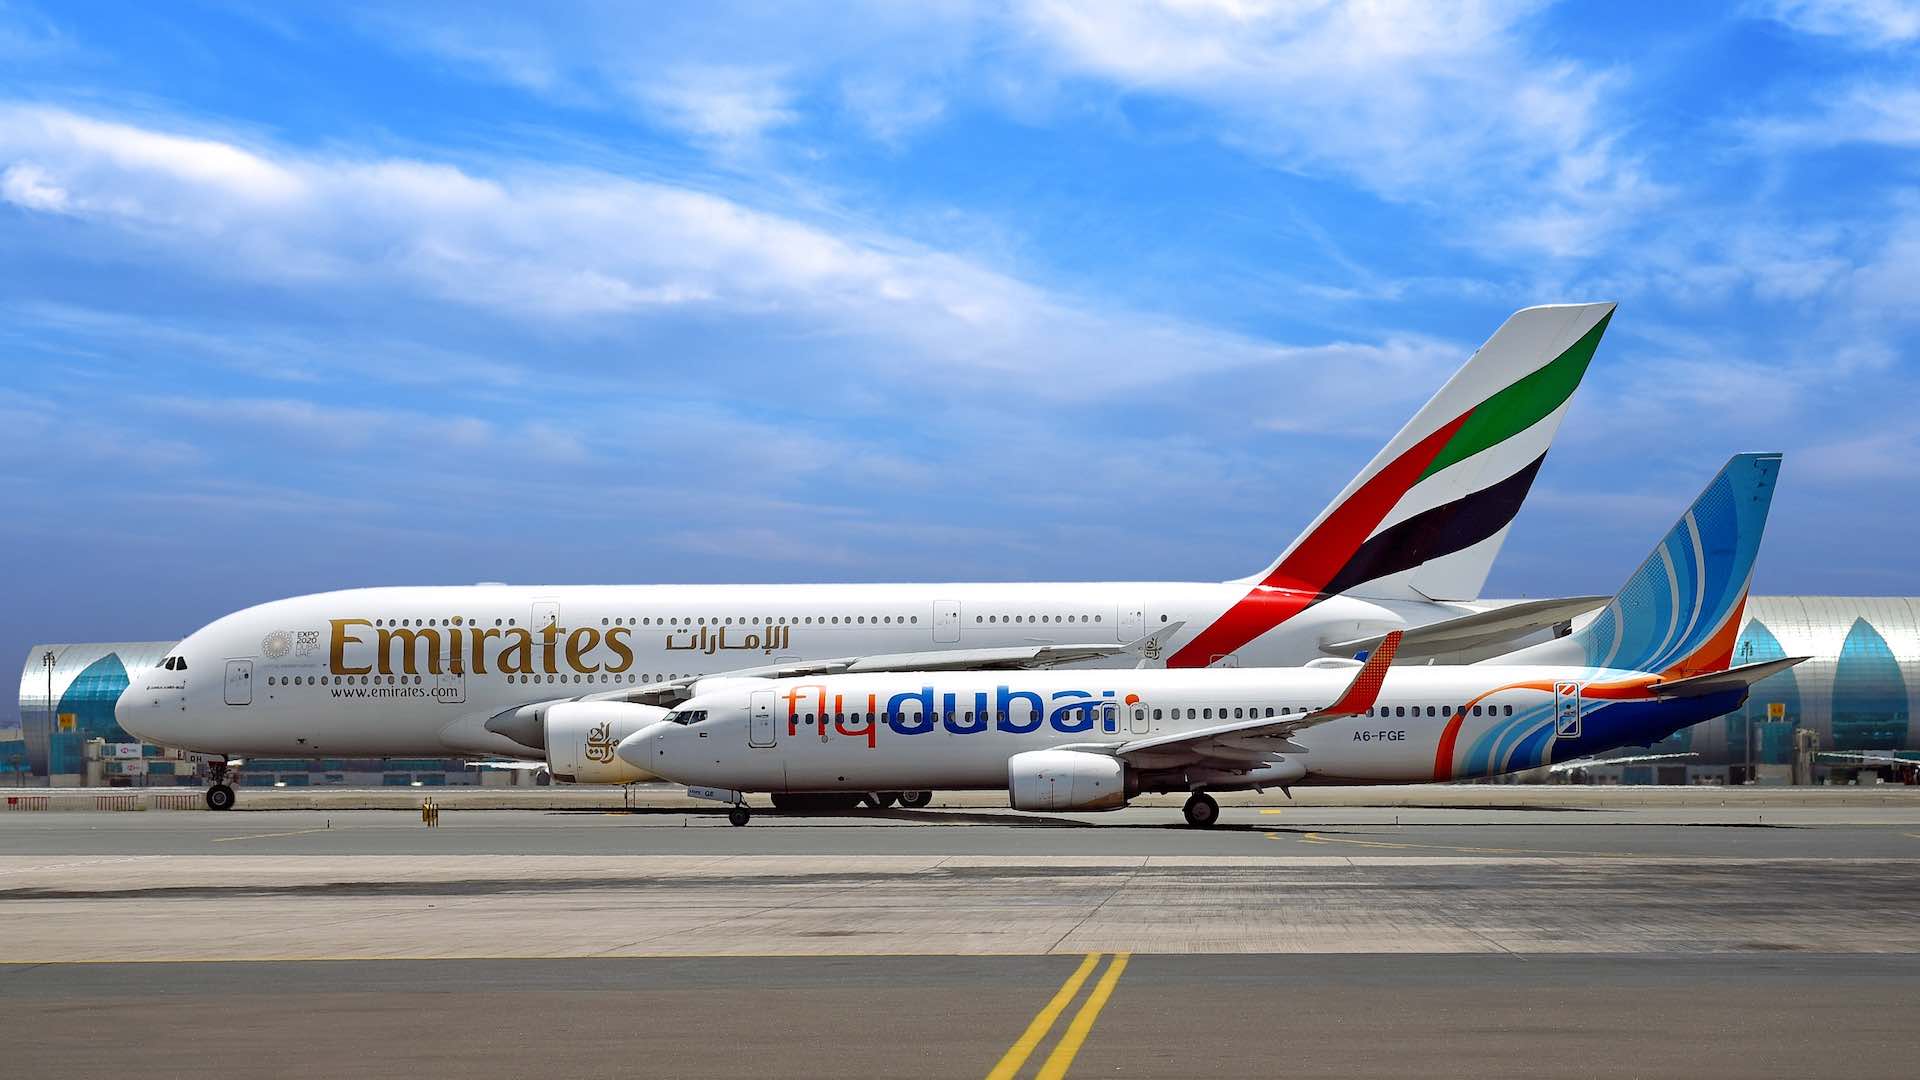 Emirates and flydubai mark five years of partnership